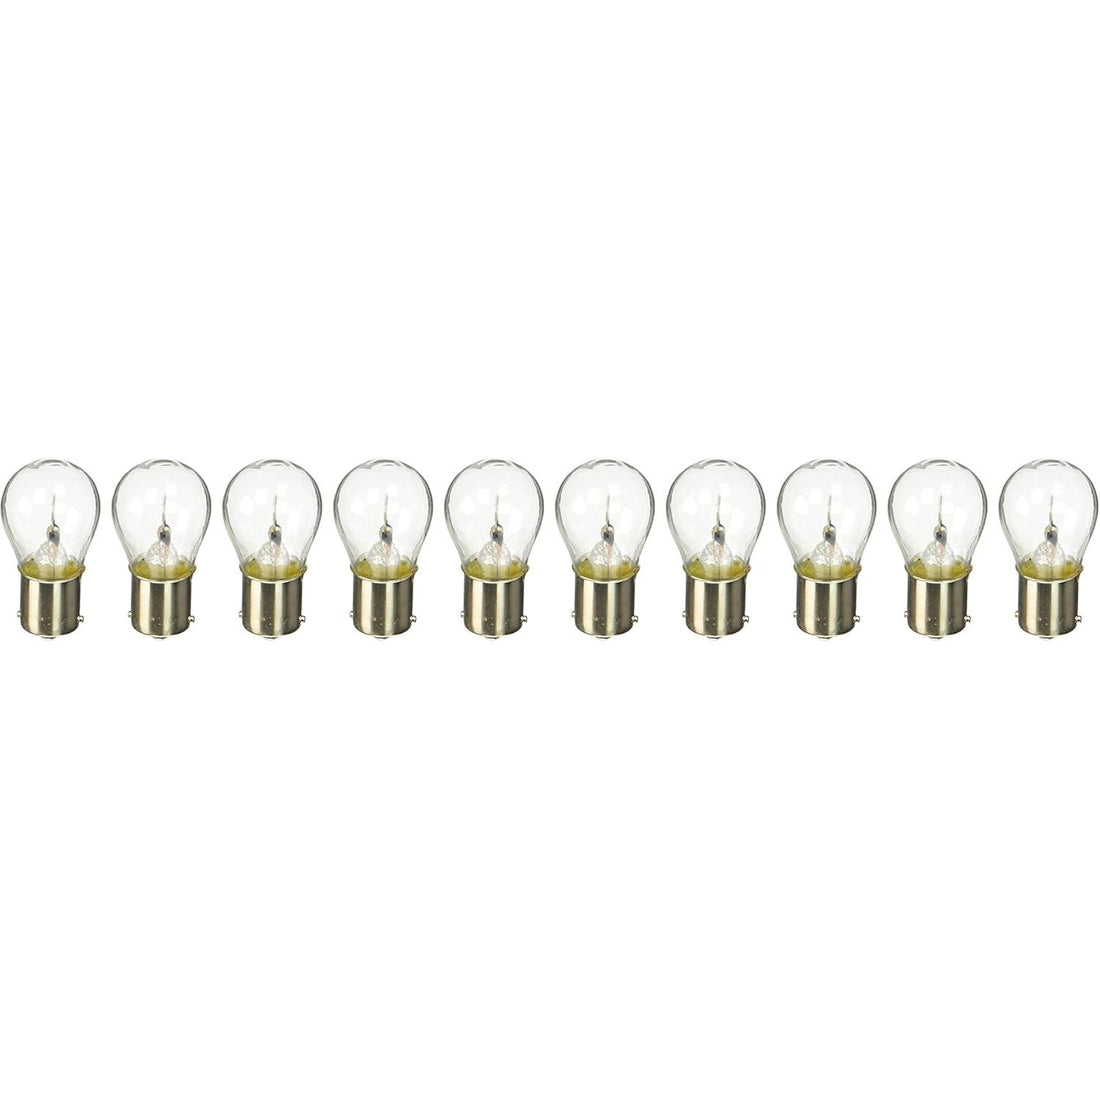 SYLVANIA 1073 Basic Miniature Bulb, (Contains 10 Bulbs)